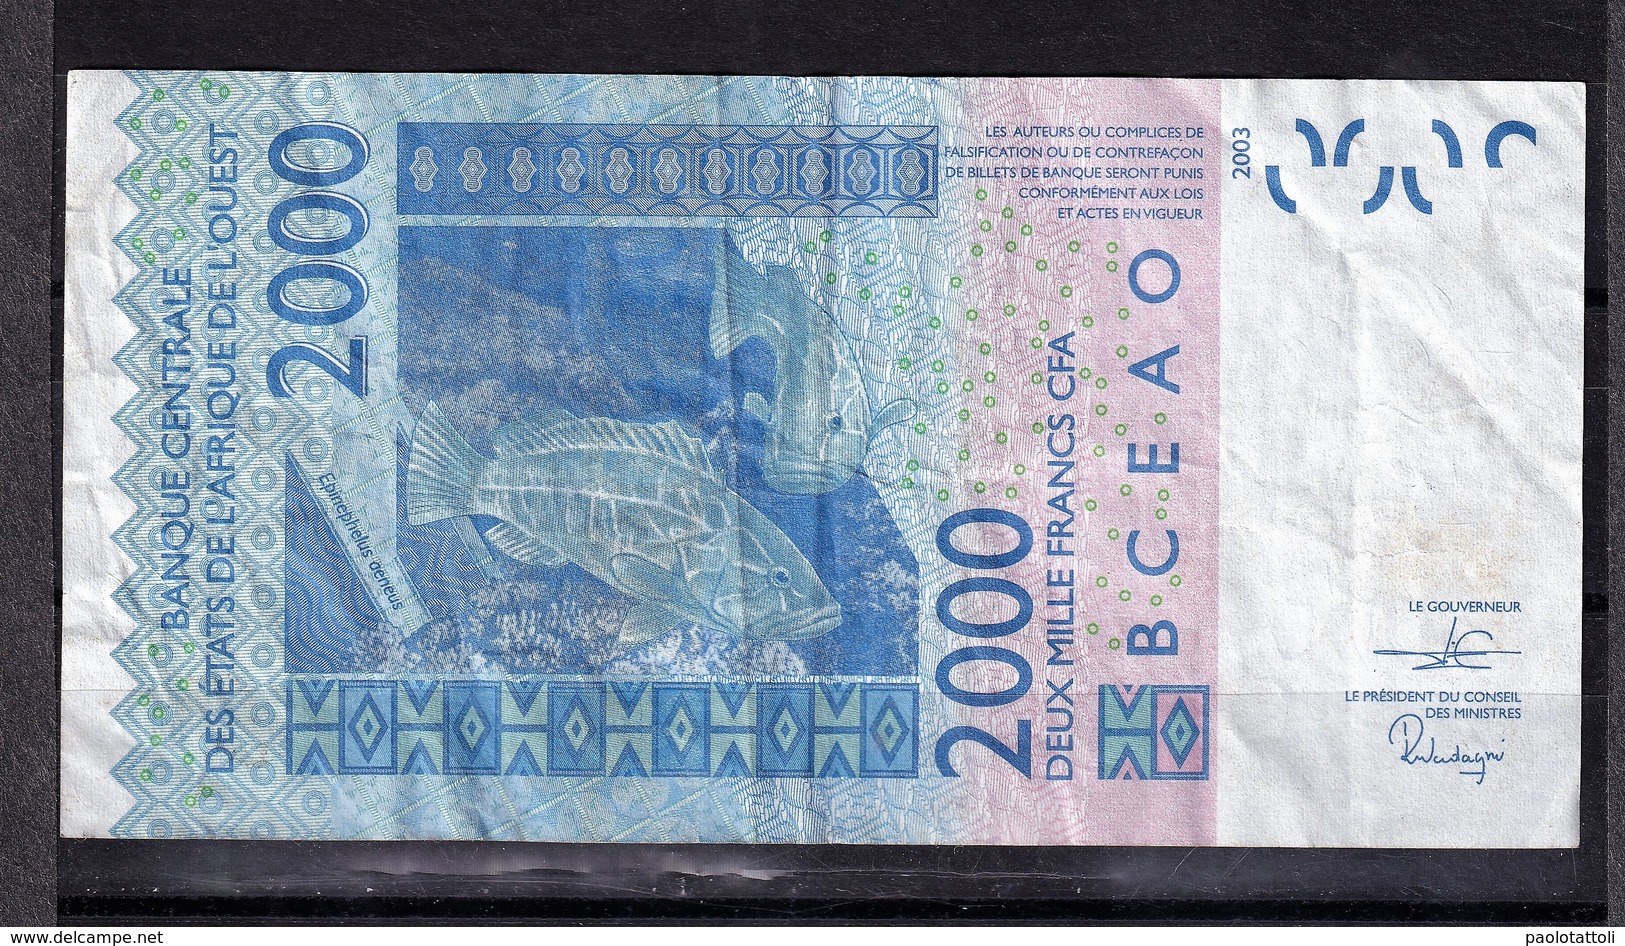 Togo, 2003- Banque Centrale Des ètats De L'Afrique De L'ouest. 2000 Francs, VF. - Togo